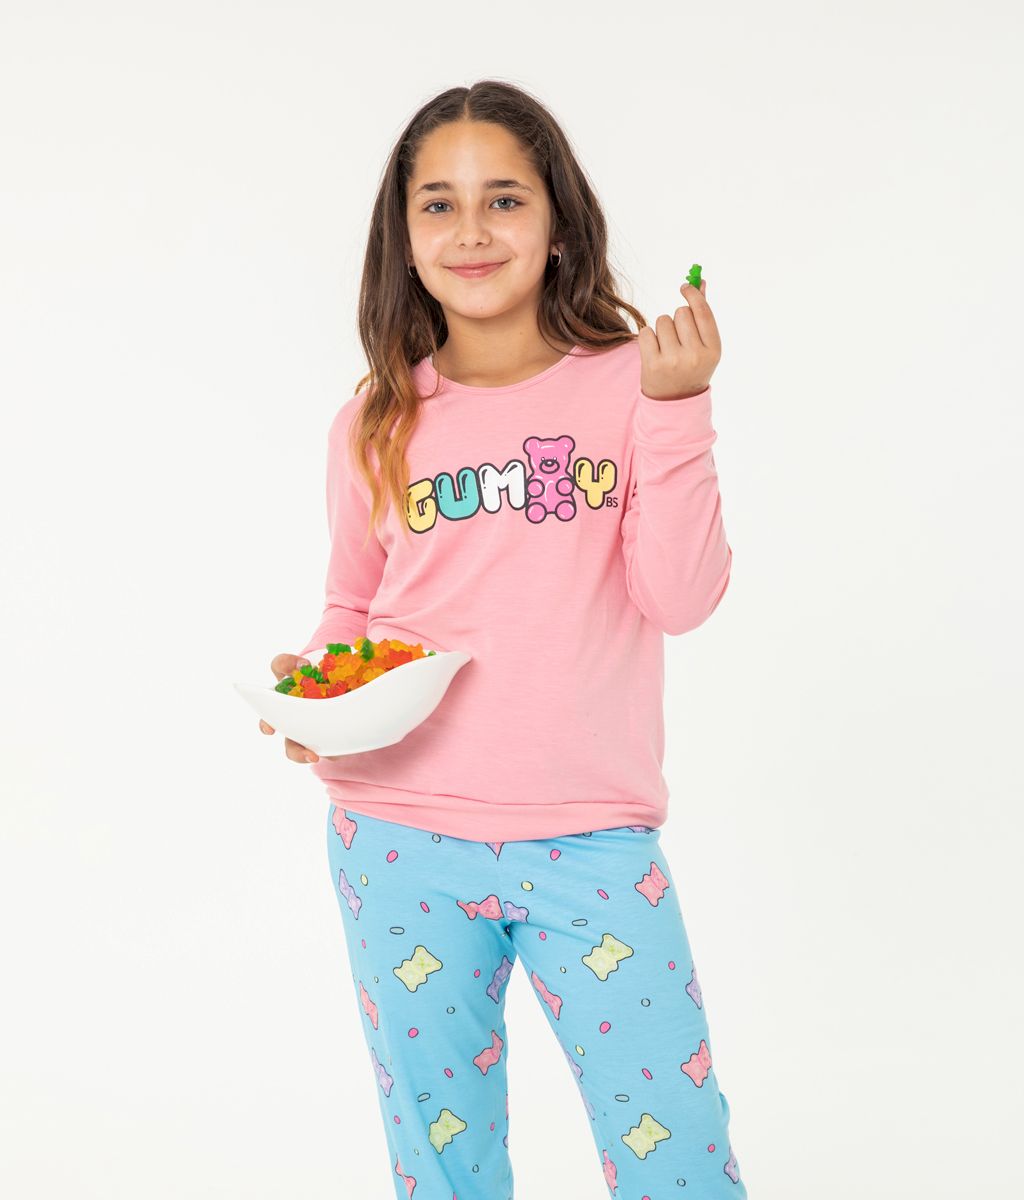 Pijama Infantil Gummy Plus Size FW - Bianca Secreta